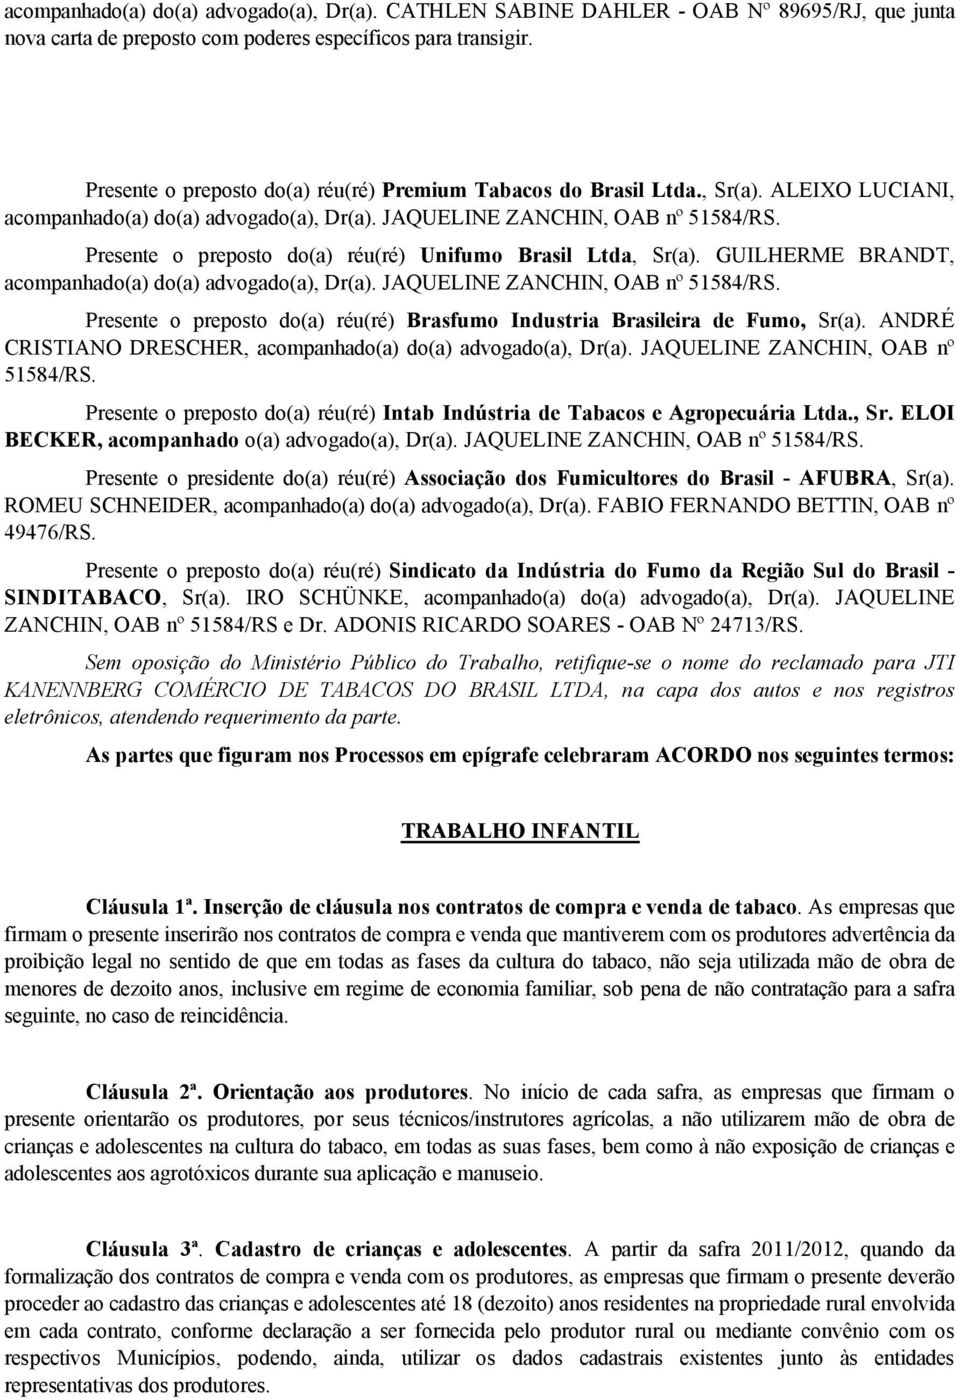 Presente o preposto do(a) réu(ré) Unifumo Brasil Ltda, Sr(a). GUILHERME BRANDT, acompanhado(a) do(a) advogado(a), Dr(a). JAQUELINE ZANCHIN, OAB nº 51584/RS.